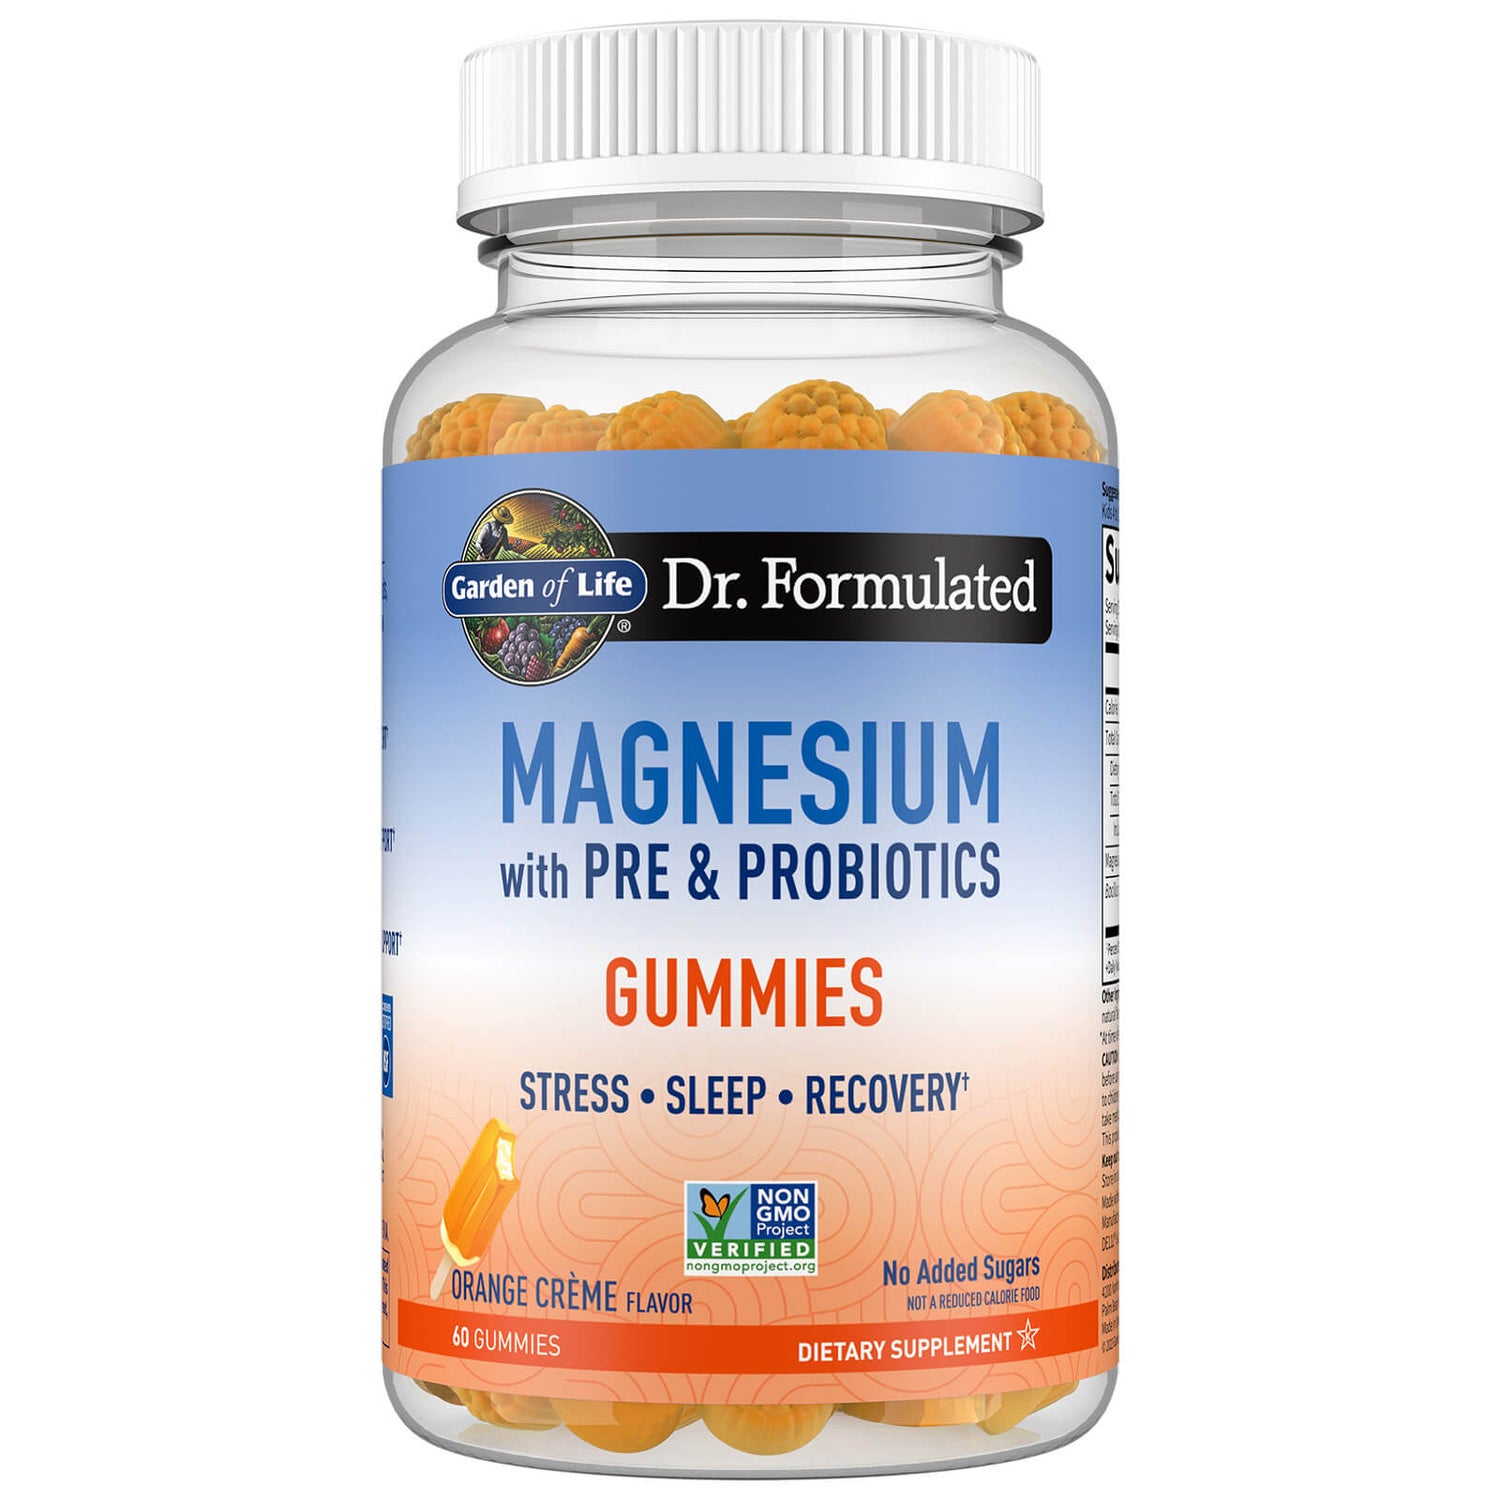 Dr. Formulated Magnesium Gummies - Orange Crème - 60 Gummies